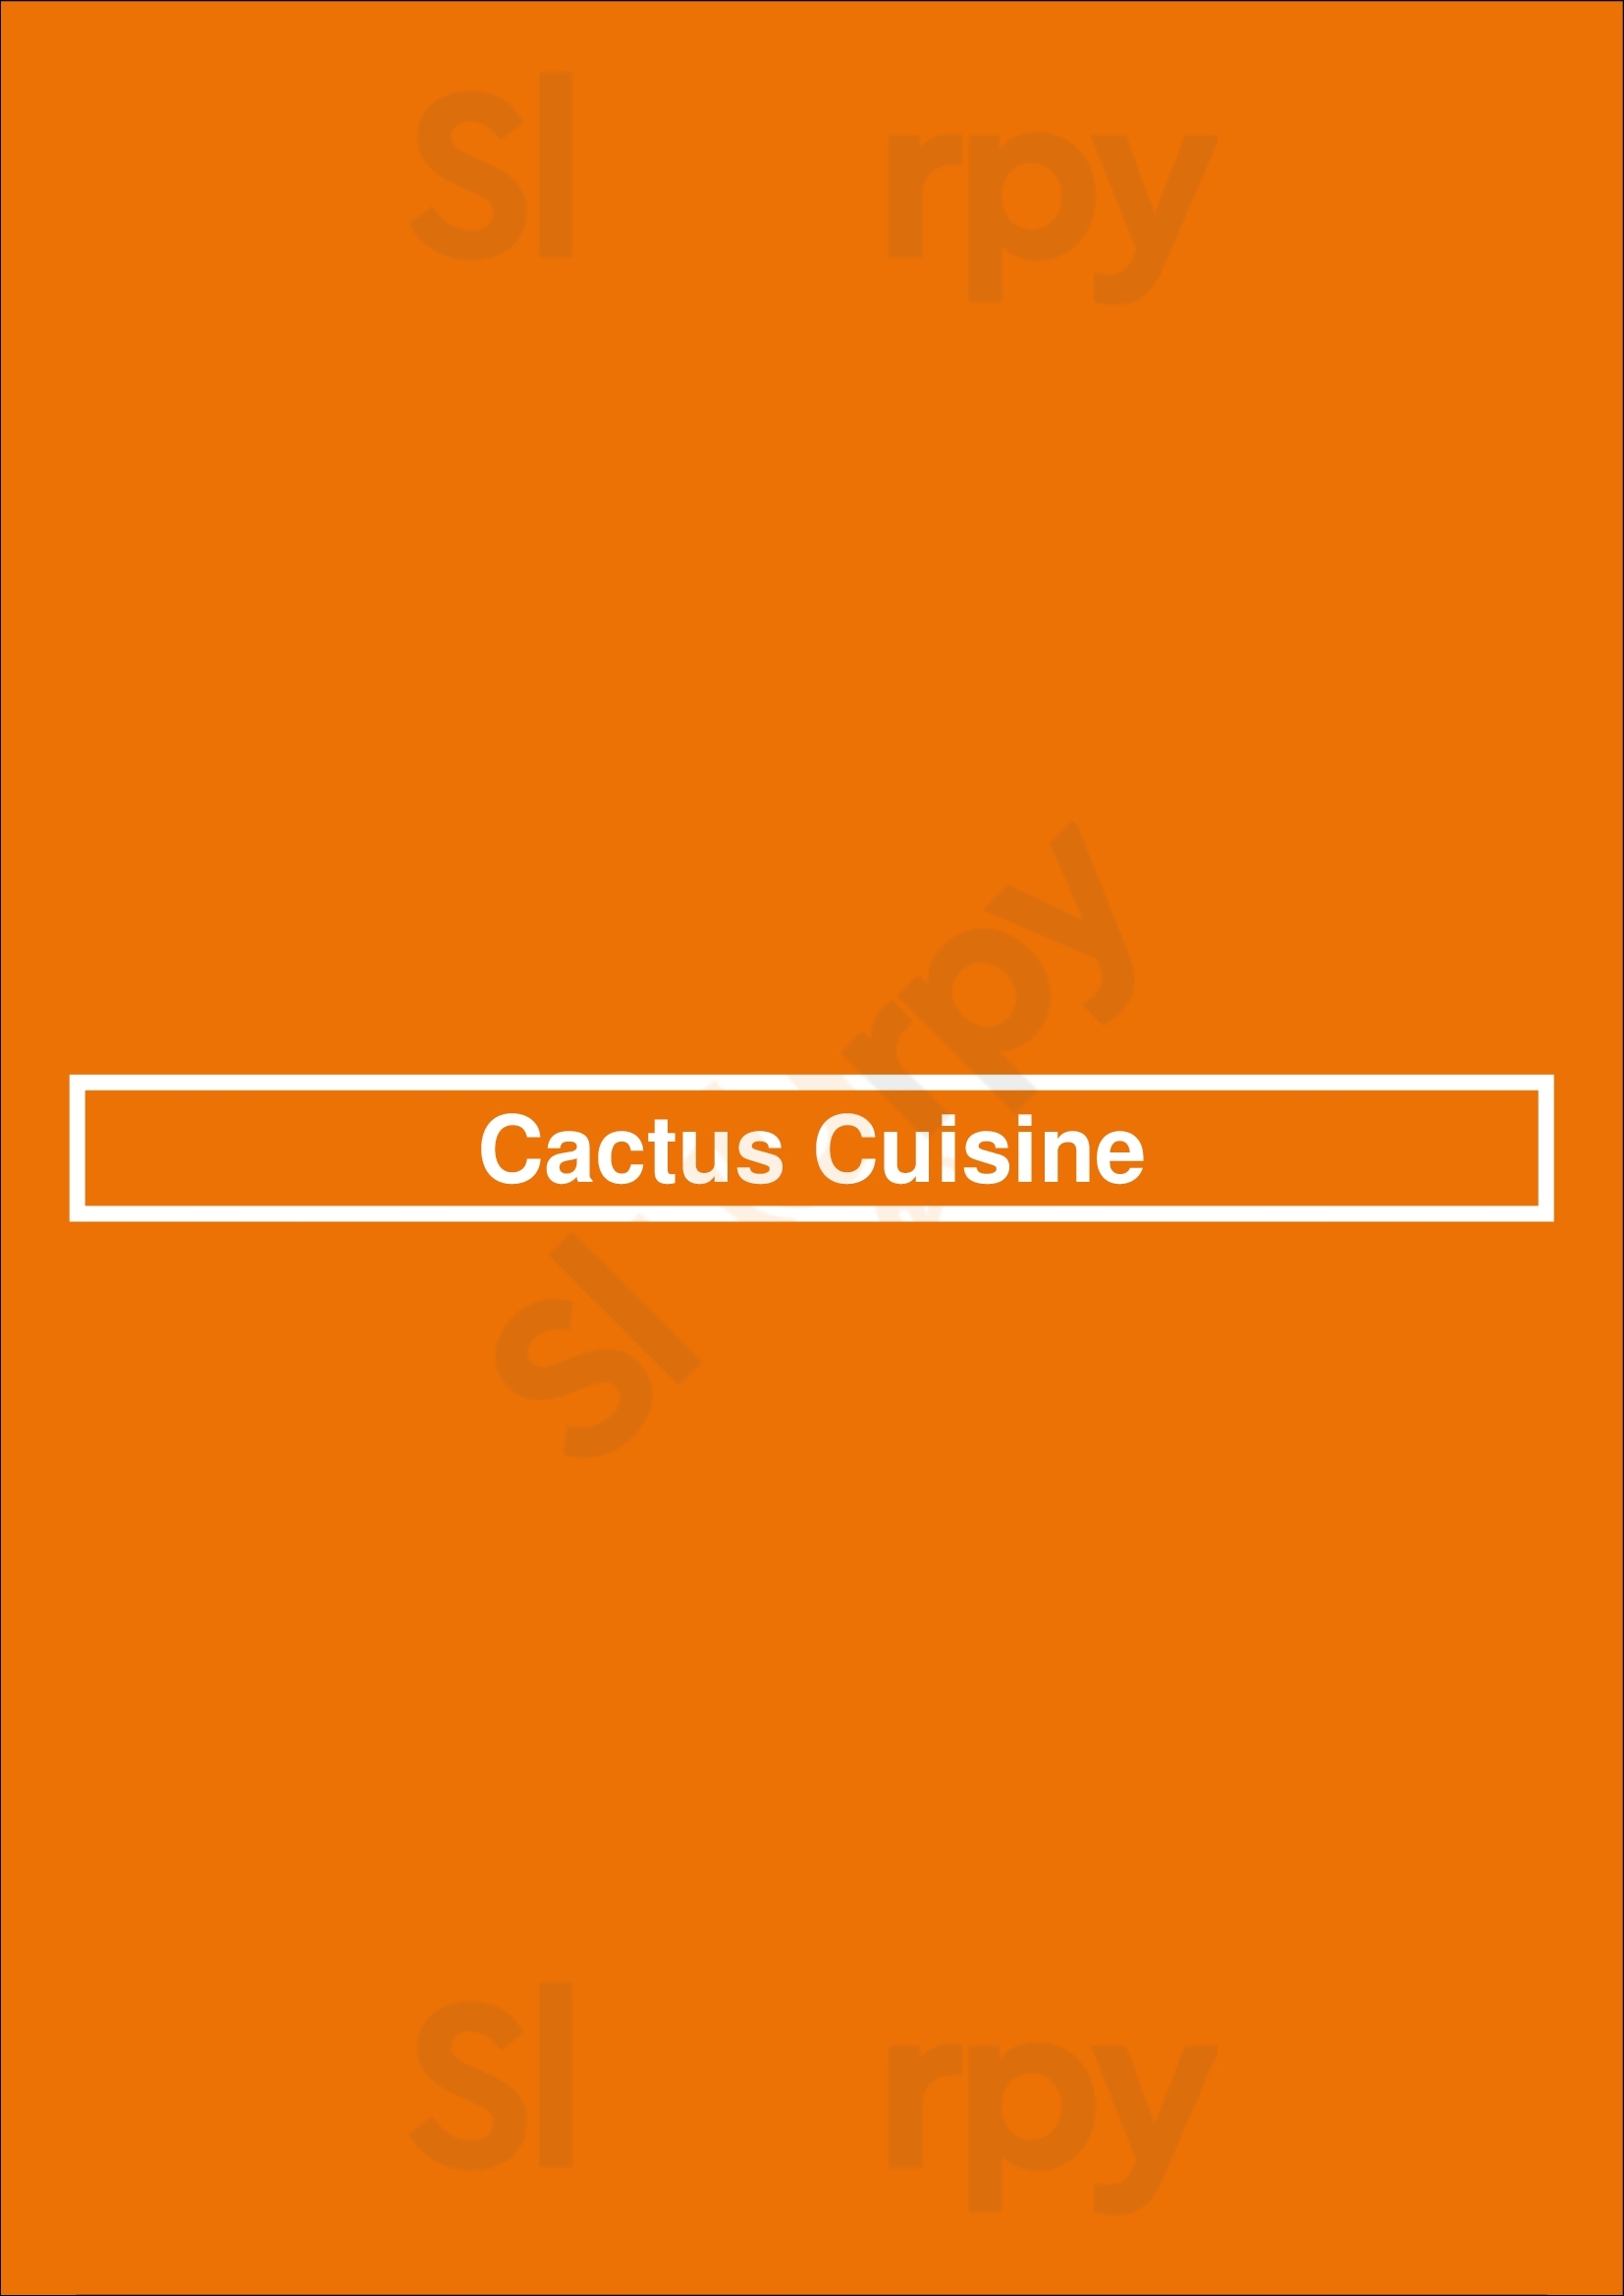 Cactus Cuisine Los Angeles Menu - 1